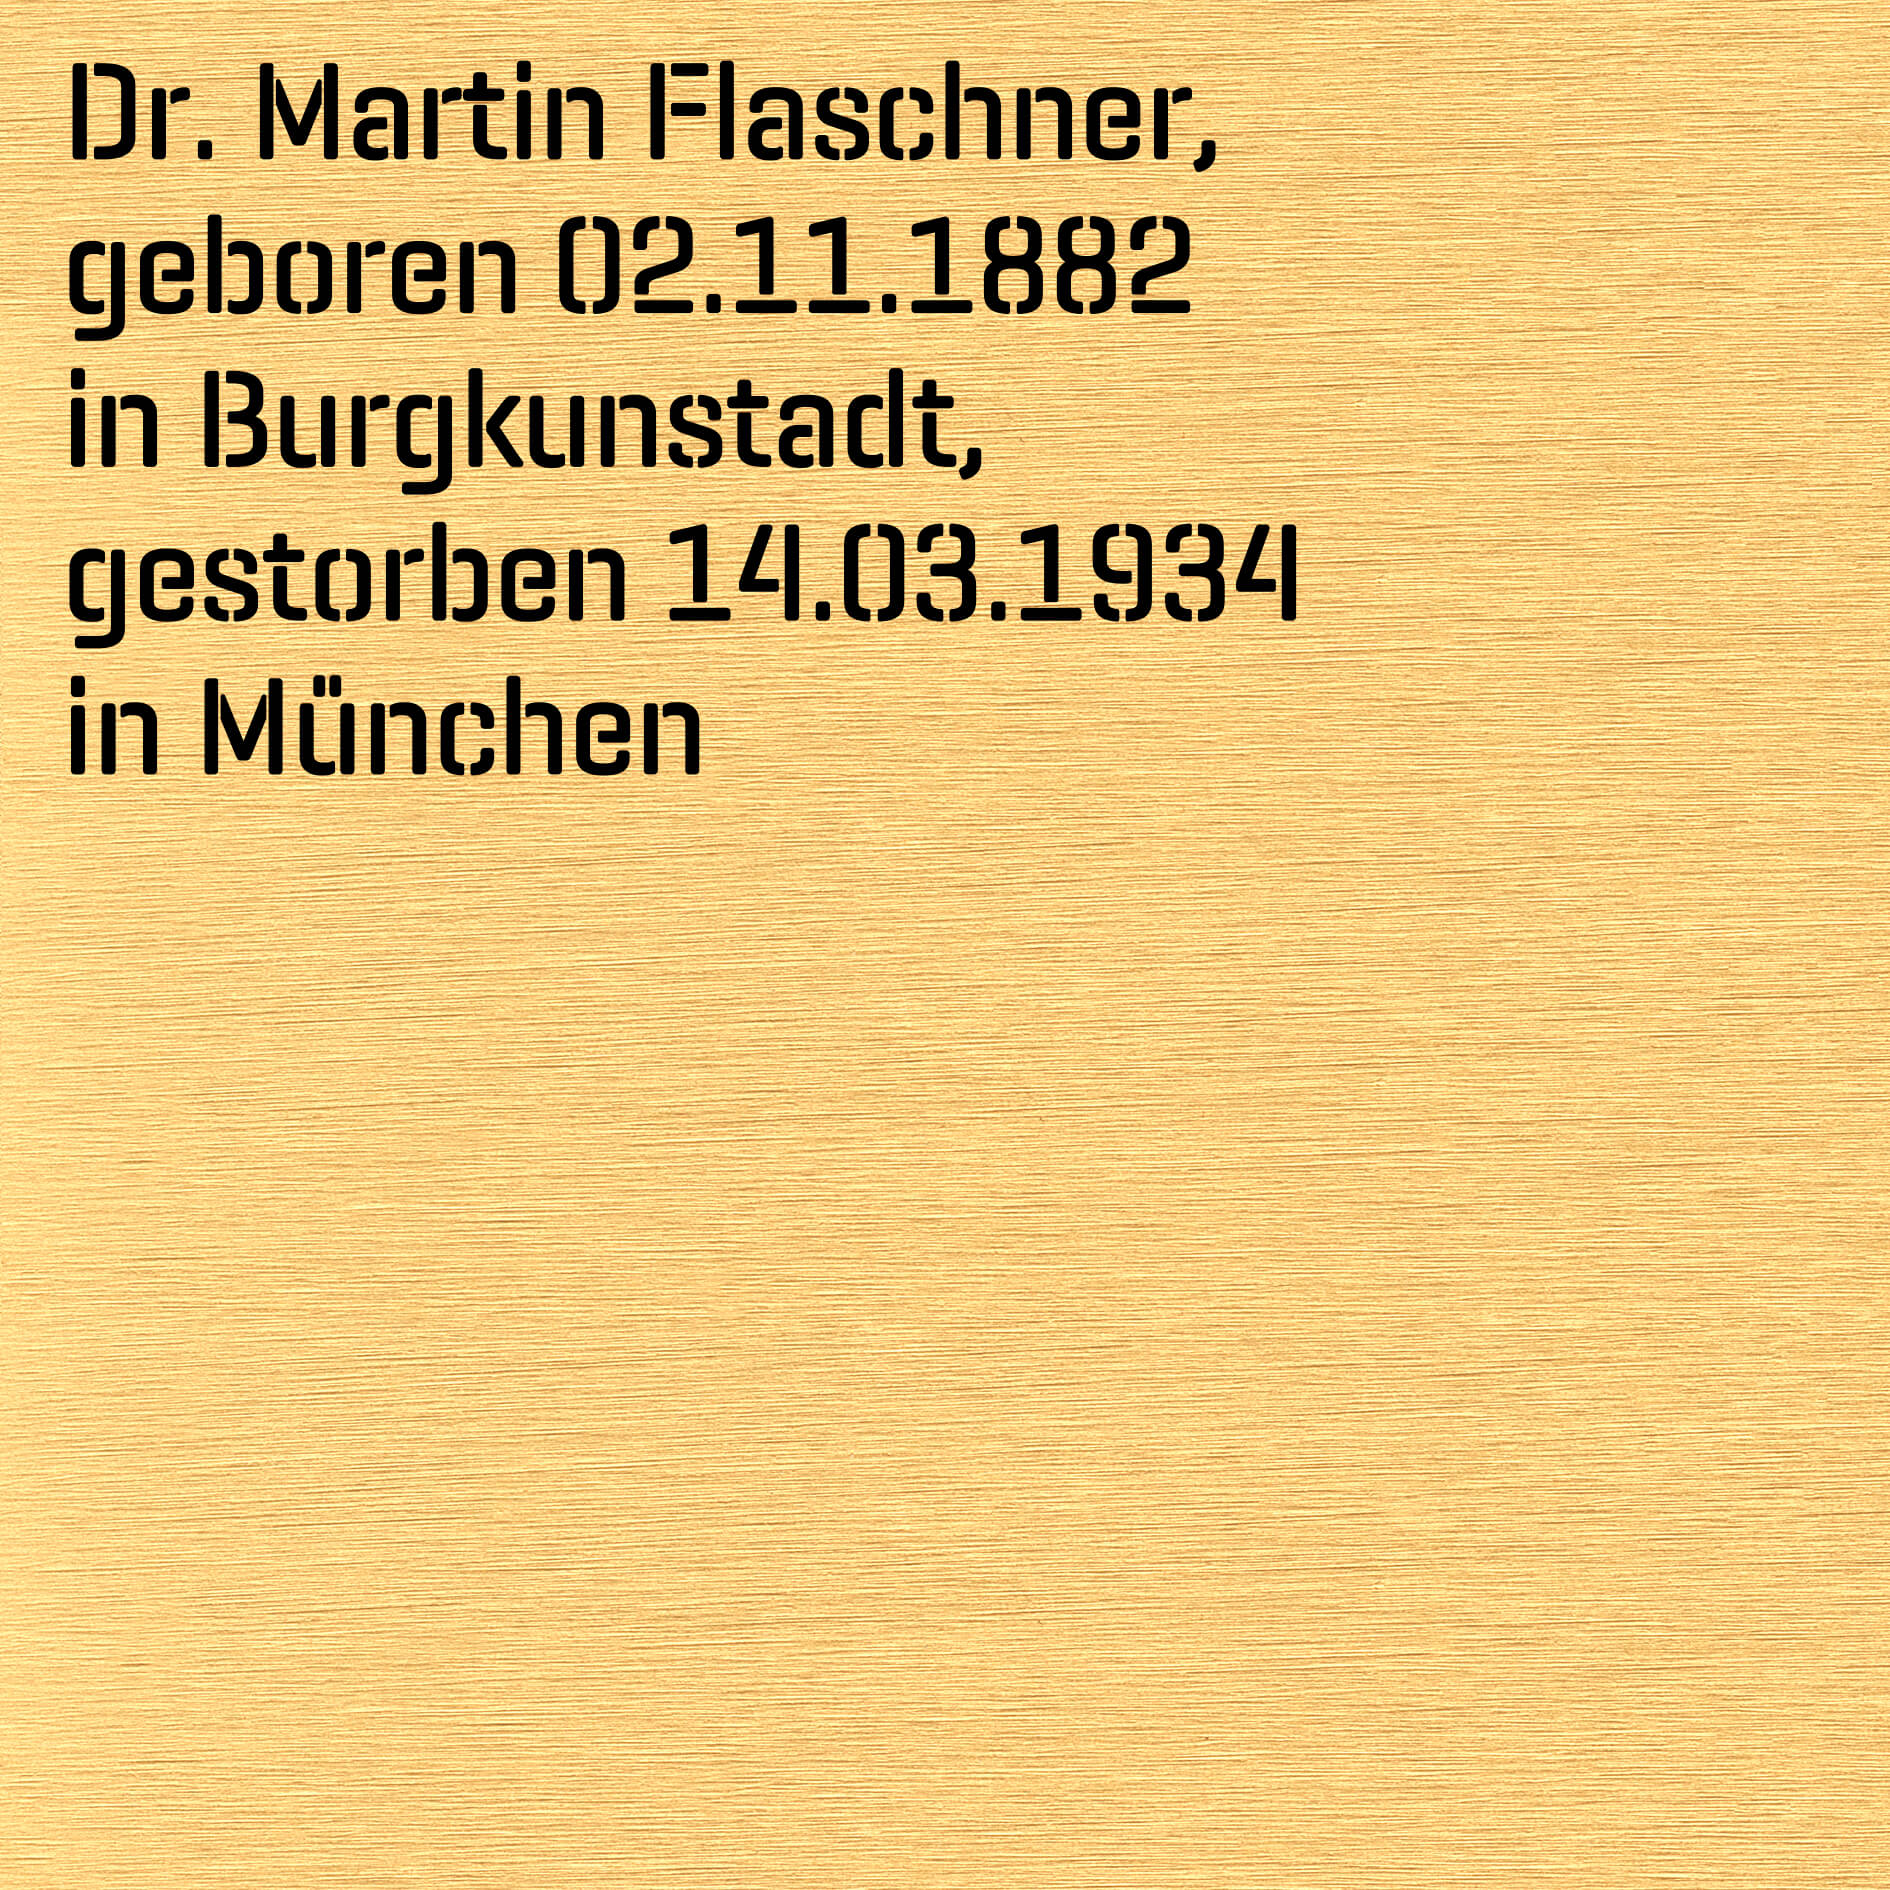 Flaschner